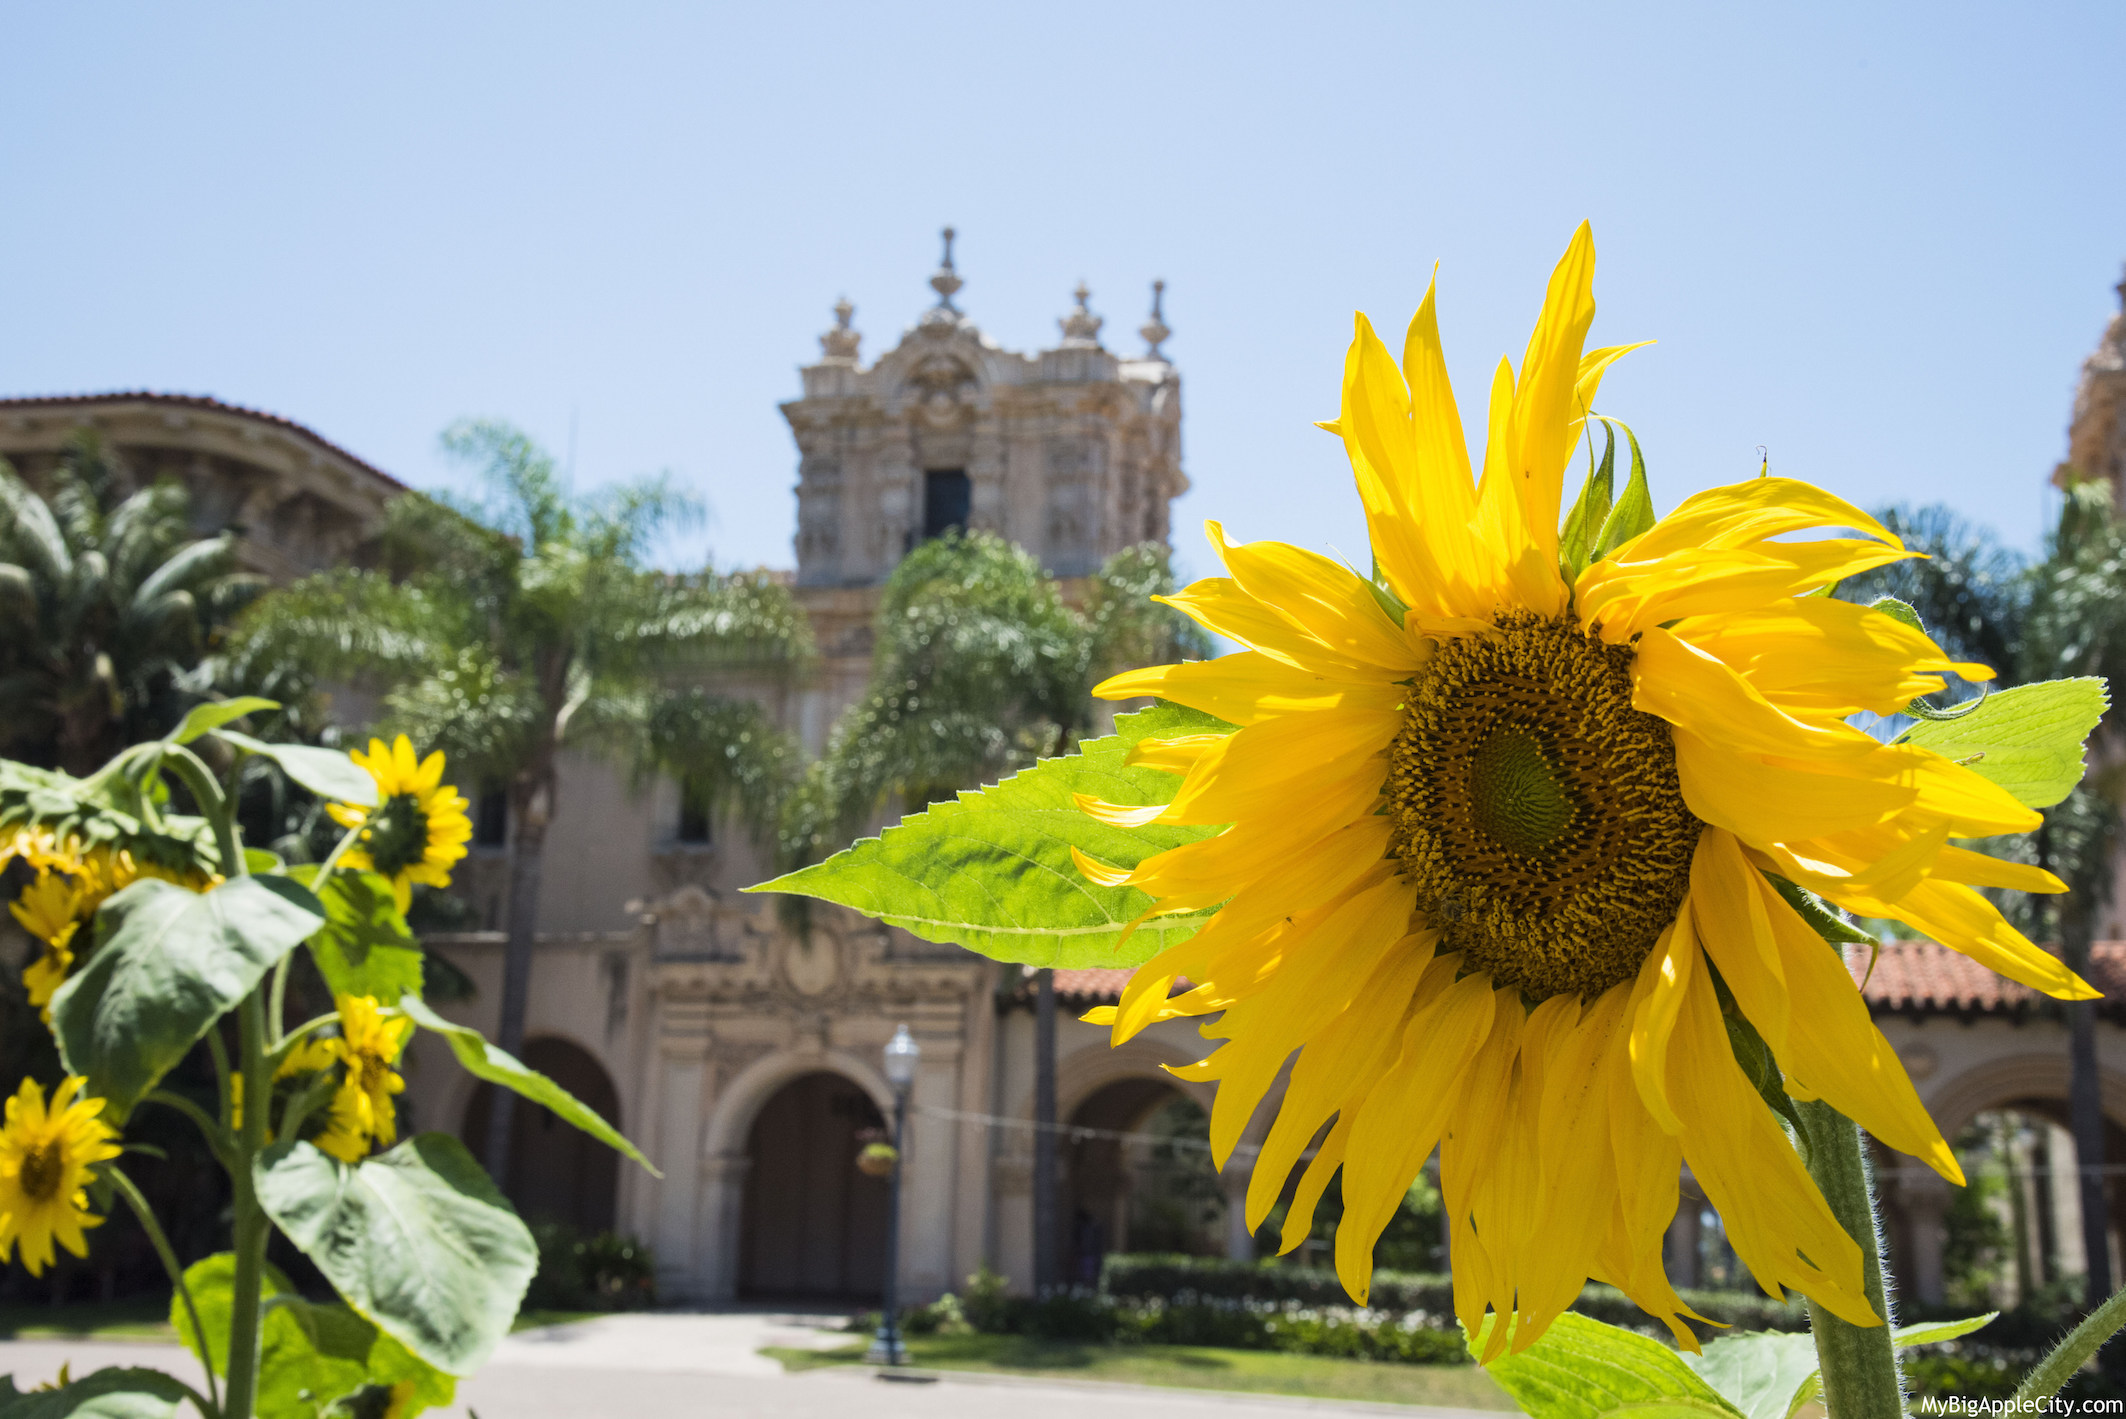 San-Diego-Sunflower-Balboa-park-photography-mybigapplecity